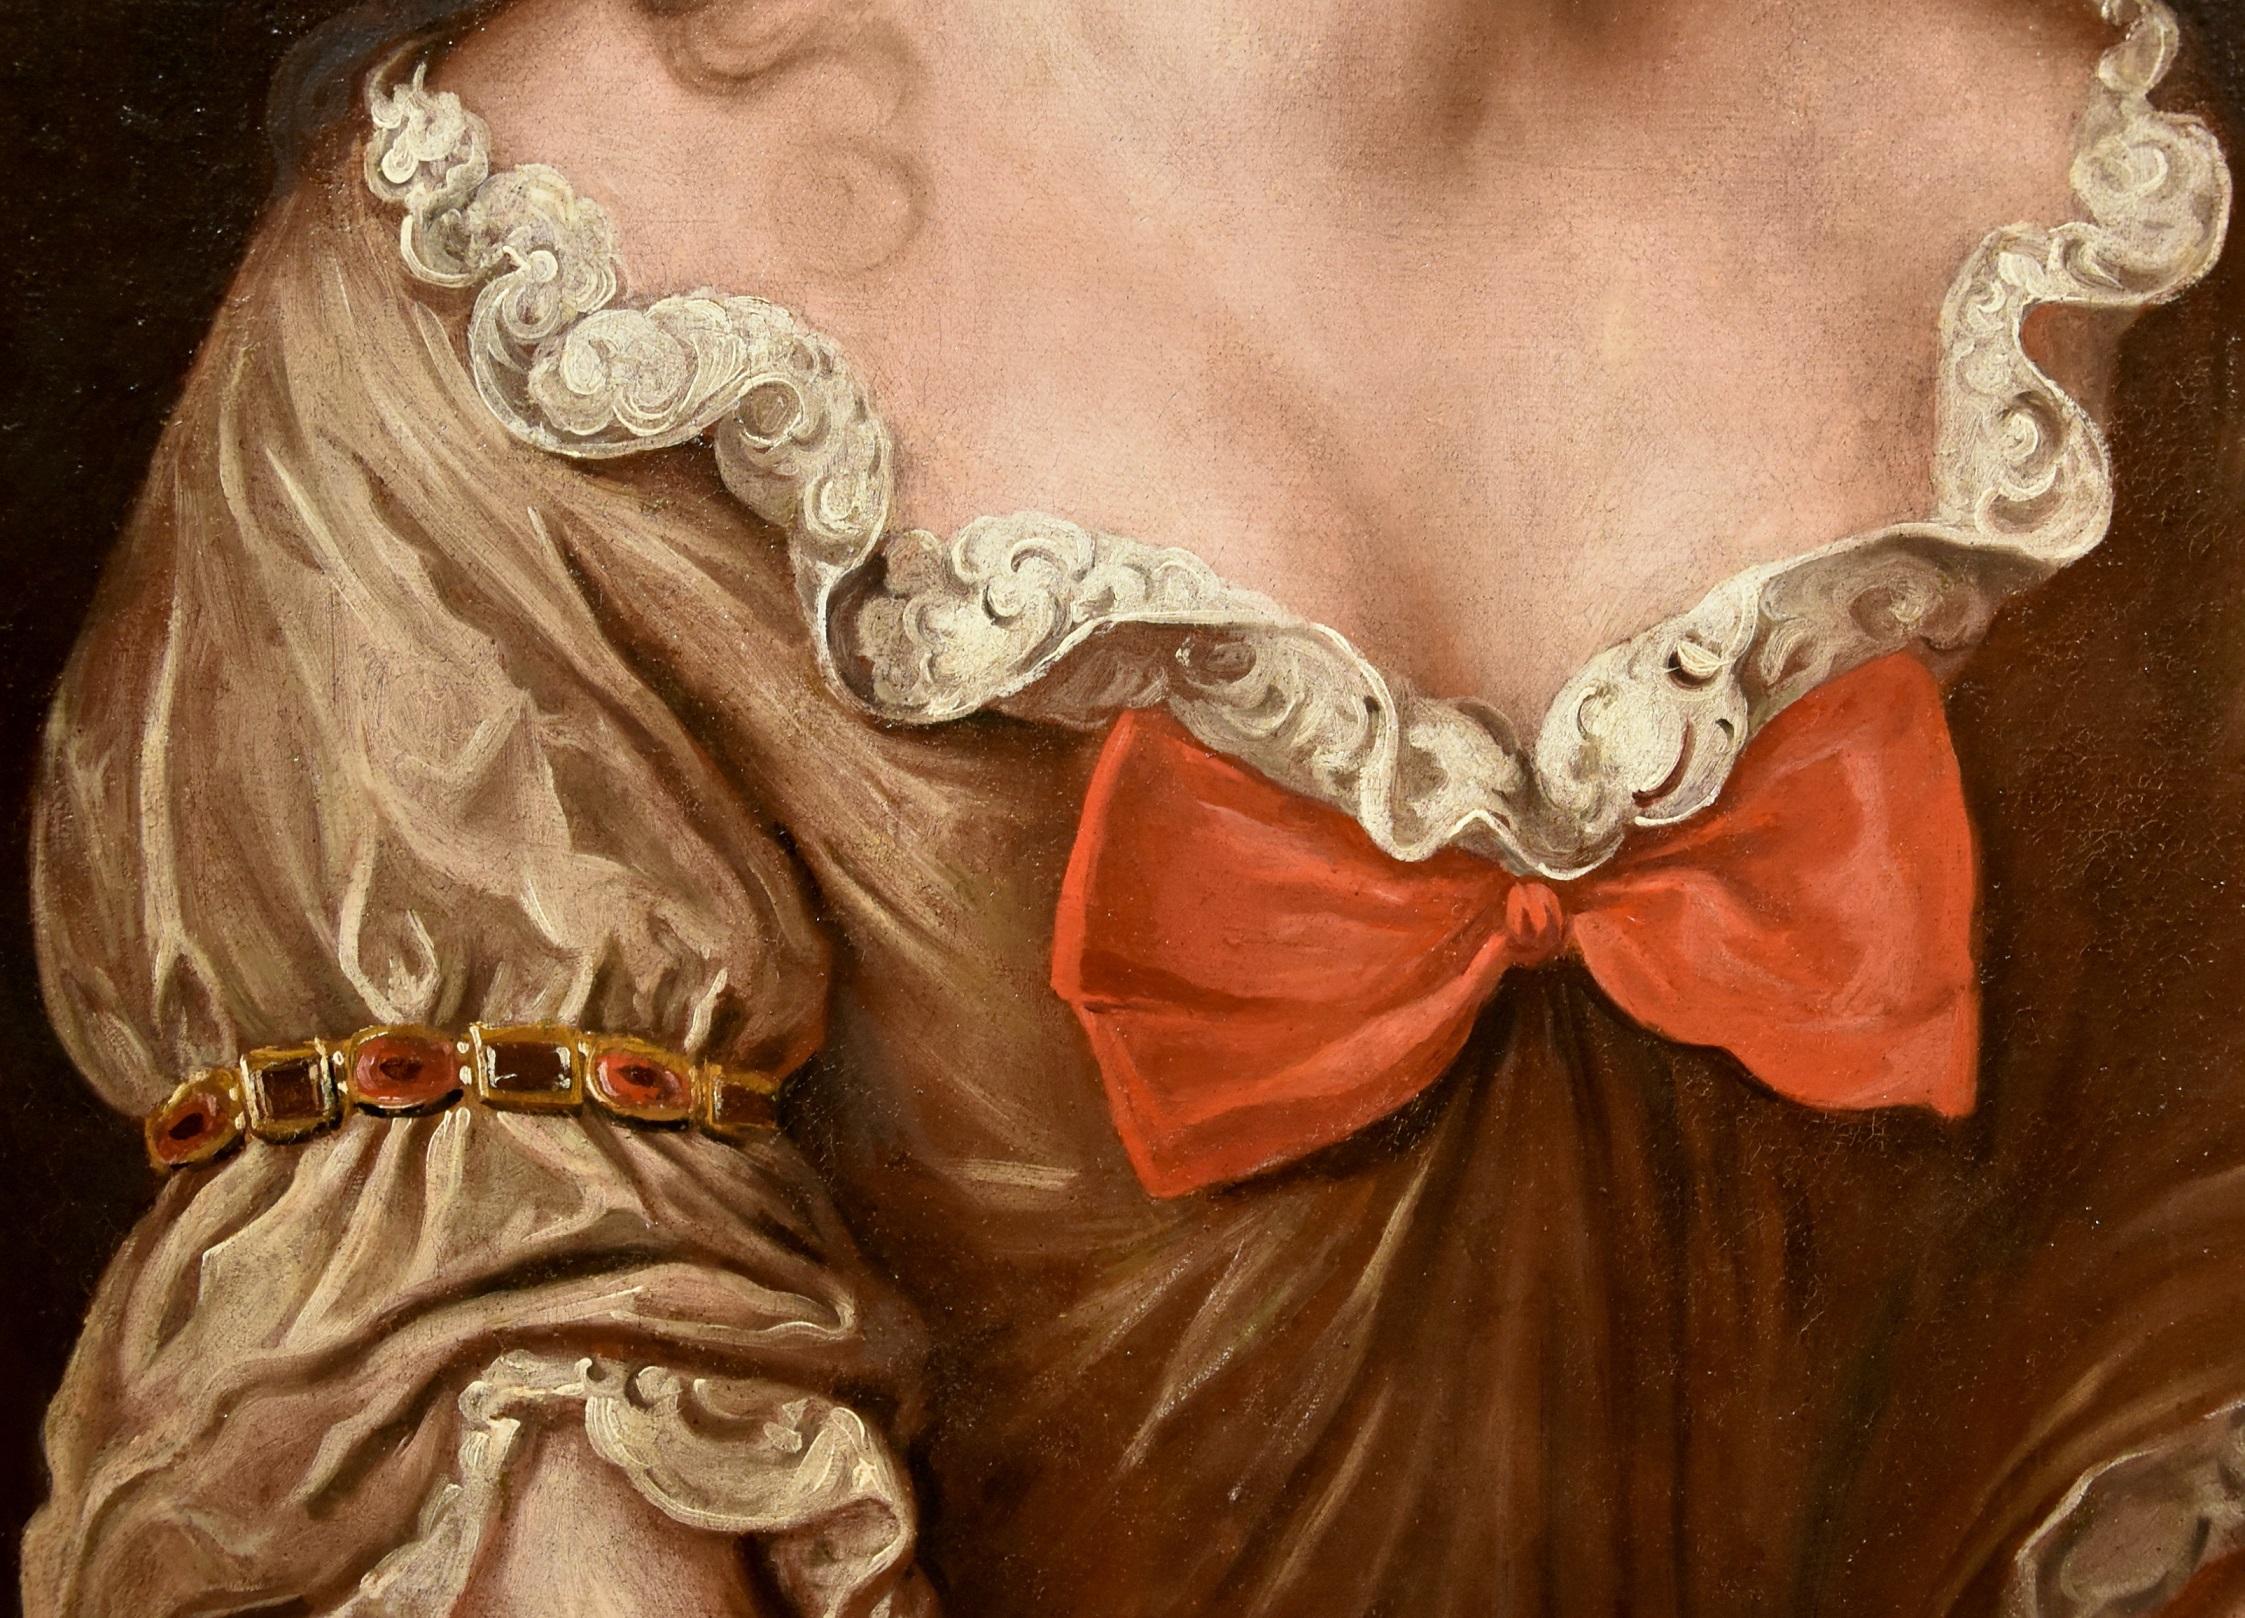 Portrait Woman Voet Paint Oil on canvas Old master 17/18th Century Flemish Art 1